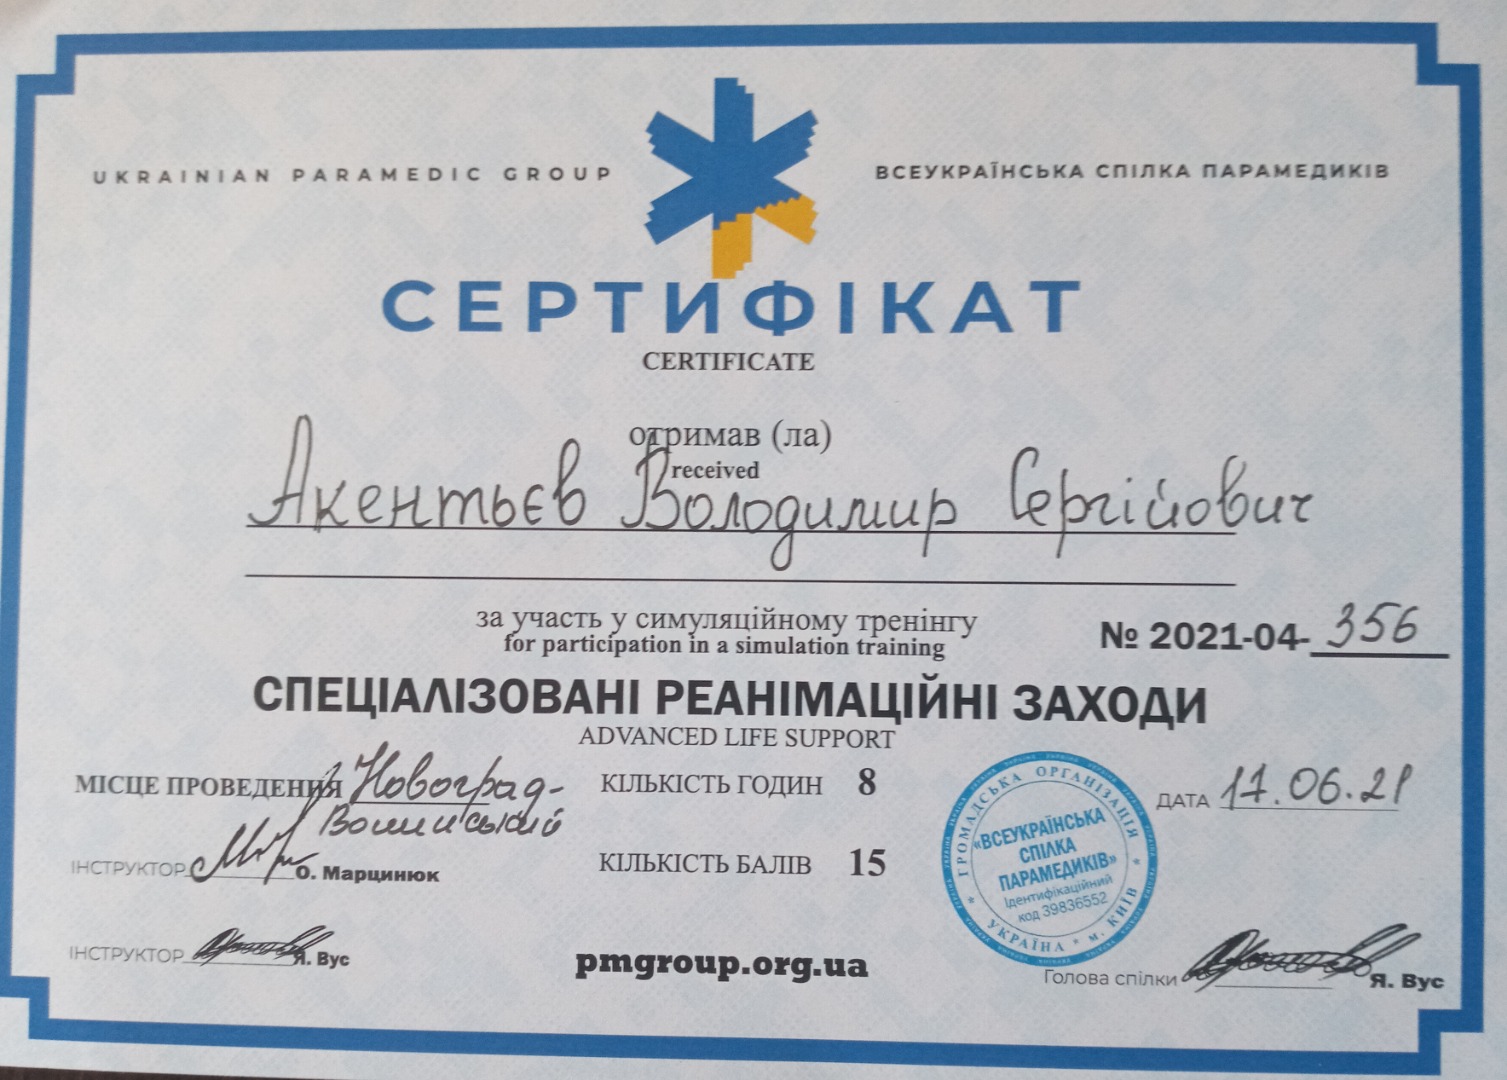 Сертифікат за участь у симуляційному тренінгу "Спеціалізовані реанімаційні заходи"